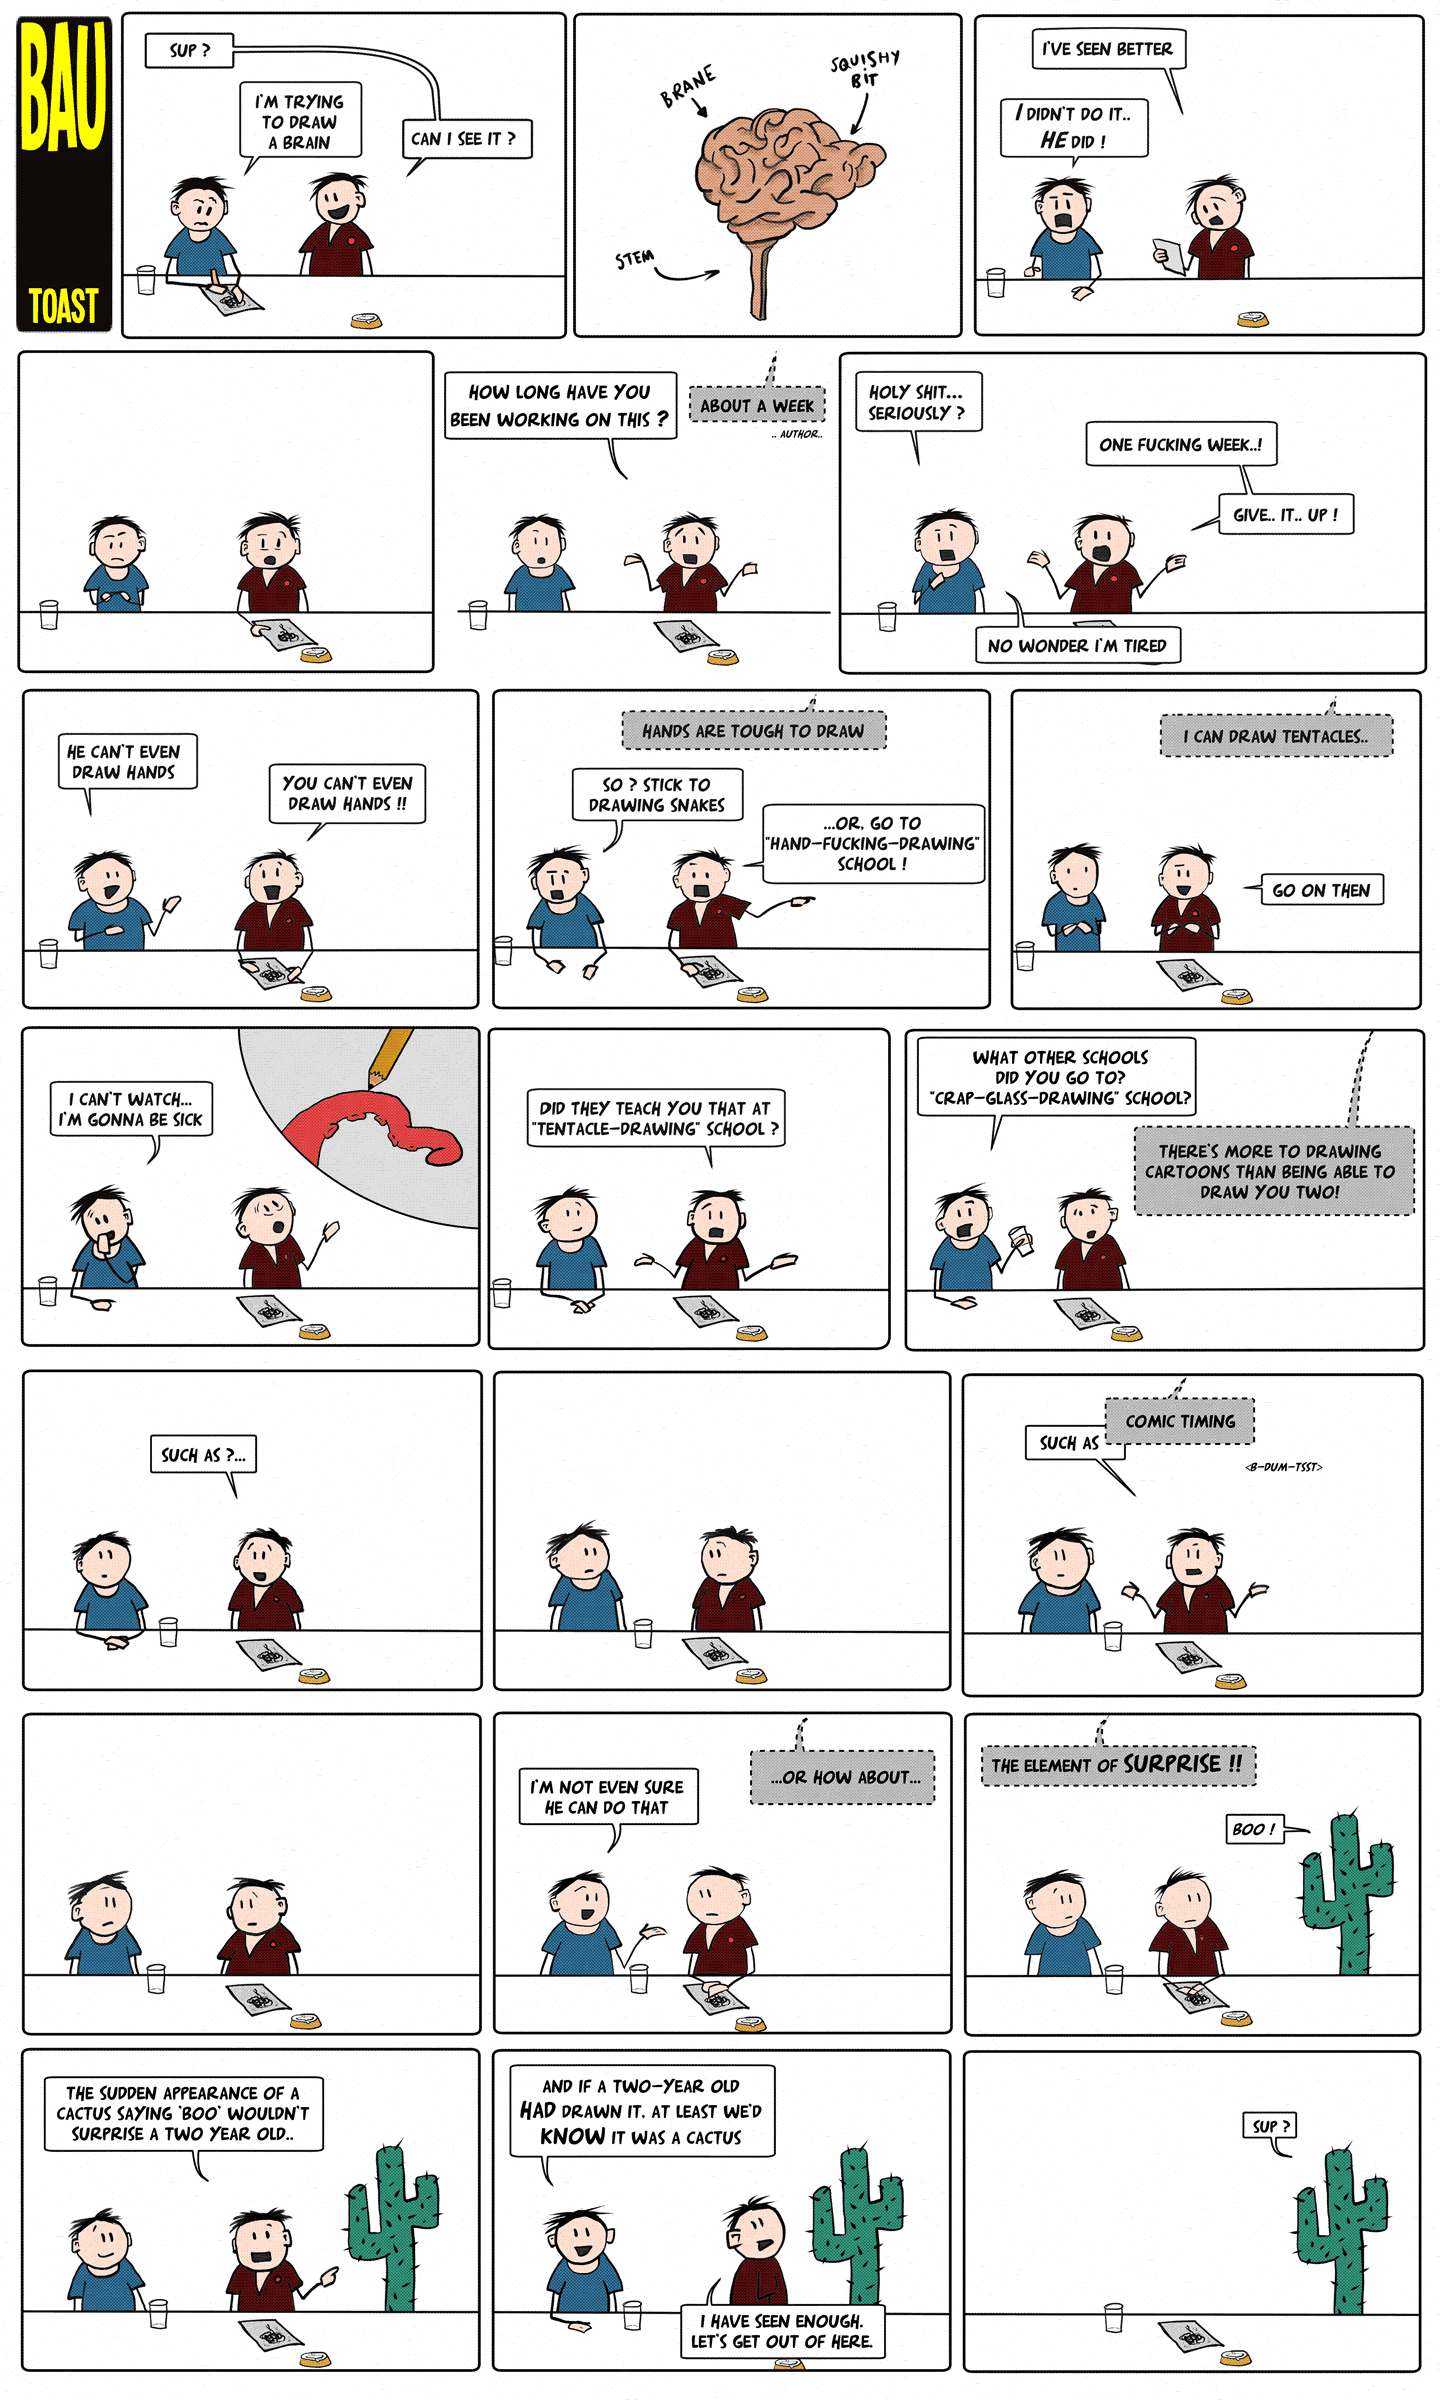 Bau webcomic #1 - Toast